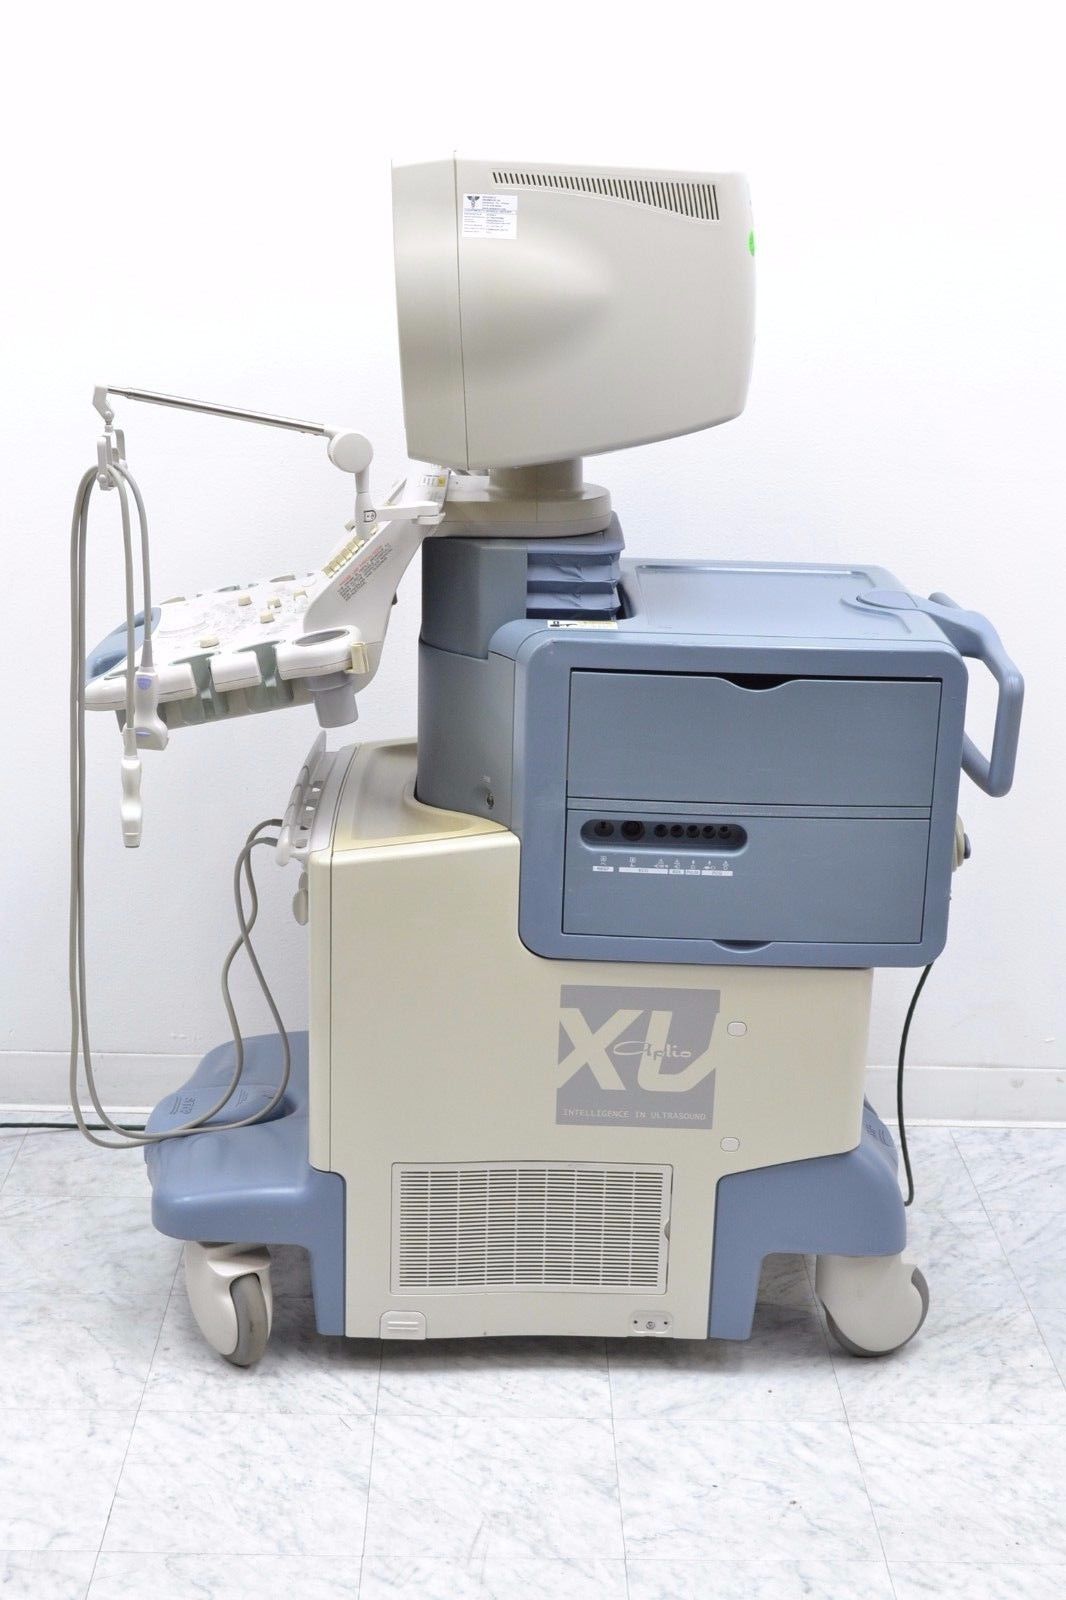 Toshiba SSA-770A Aplio XV Diagnostic Ultrasound W/ PVT-385BT/ PLT-1204AT Probes DIAGNOSTIC ULTRASOUND MACHINES FOR SALE